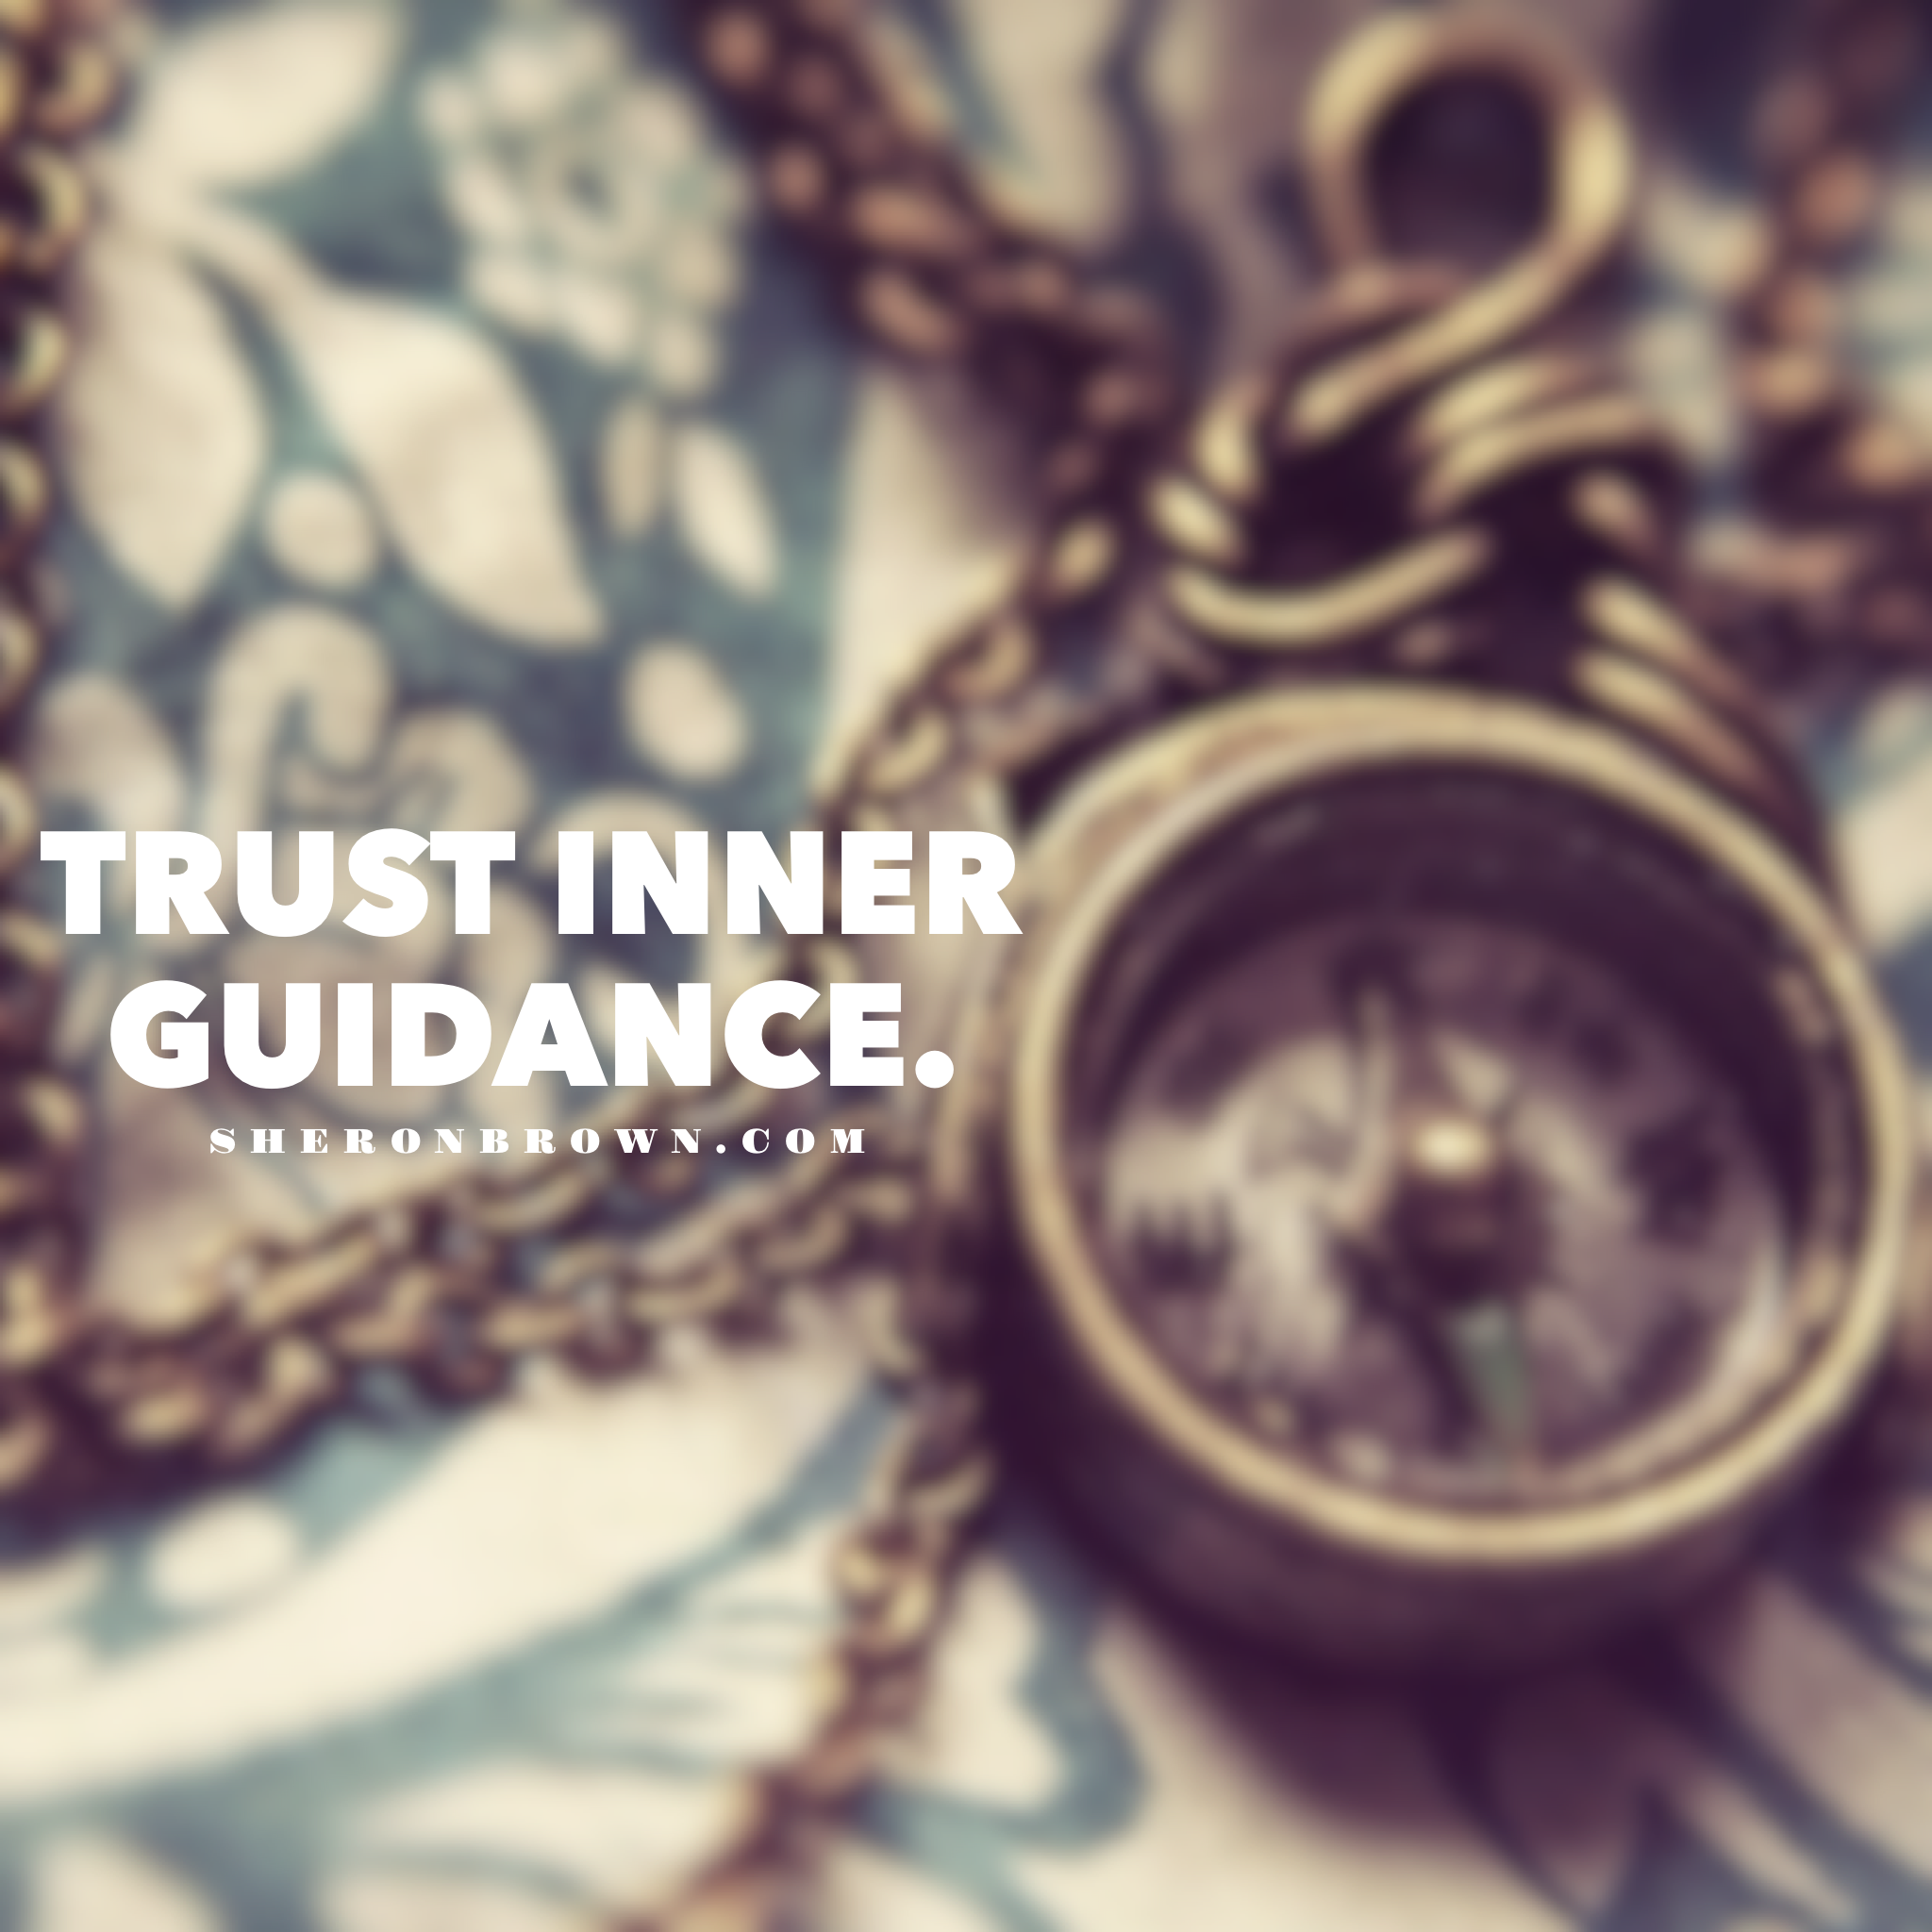 How to Trust Inner Guidance